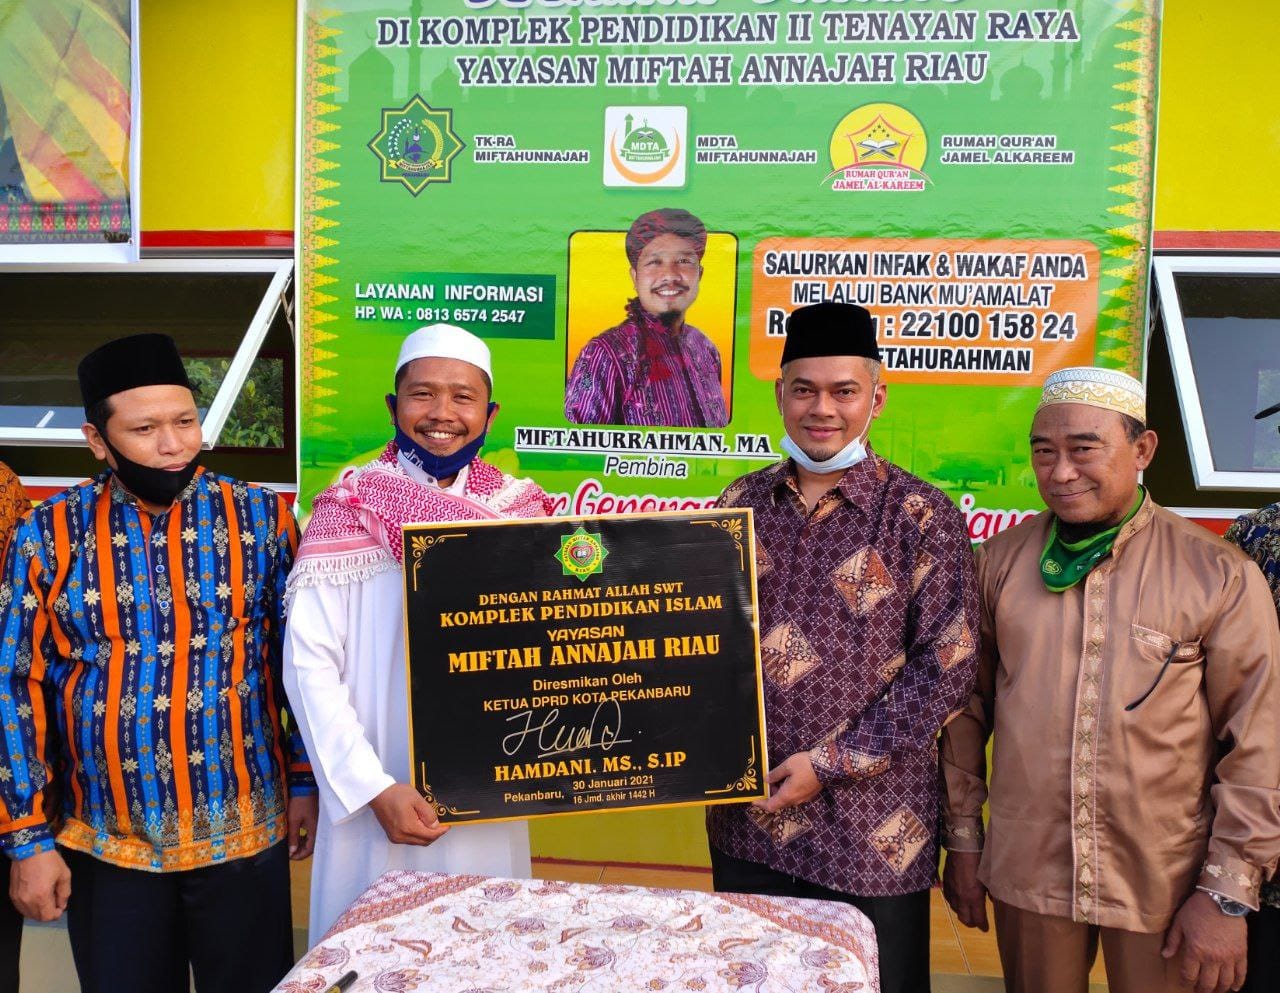 Hamdani : Resmikan Komplek Pendidikan Islam Yayasan Miftah Annajah Riau